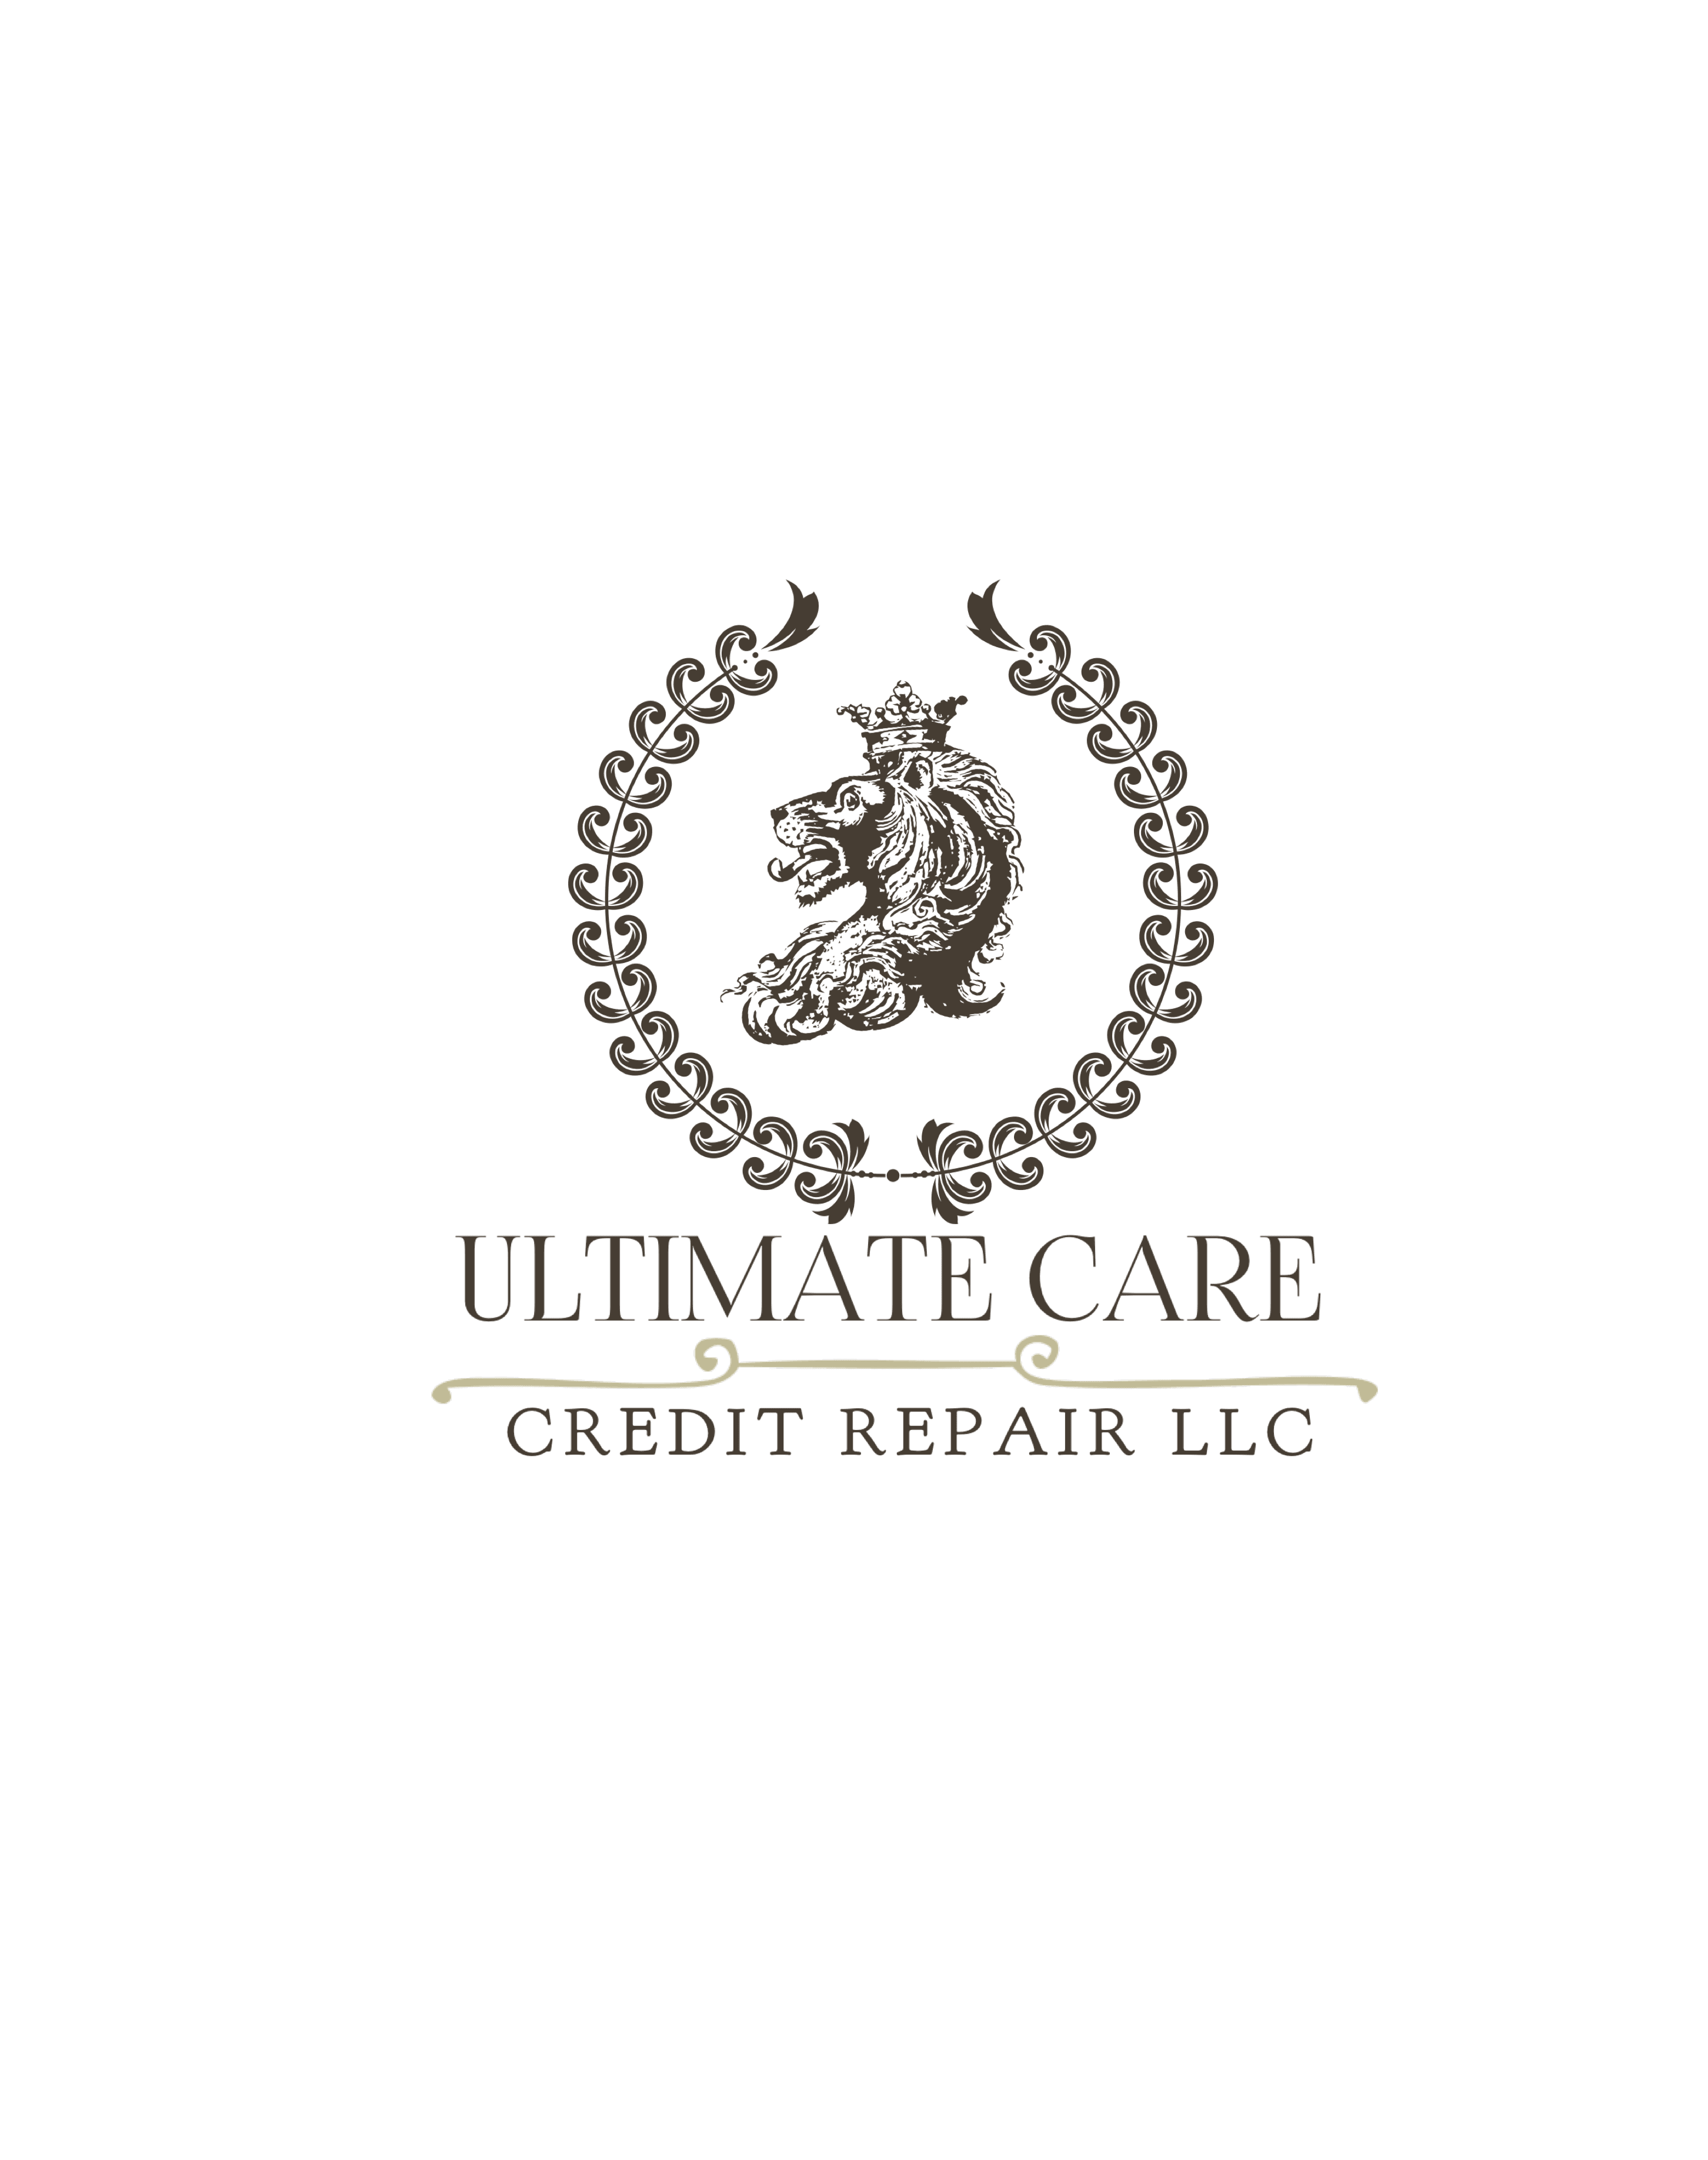 Ultimate Care Credit Repair Llc